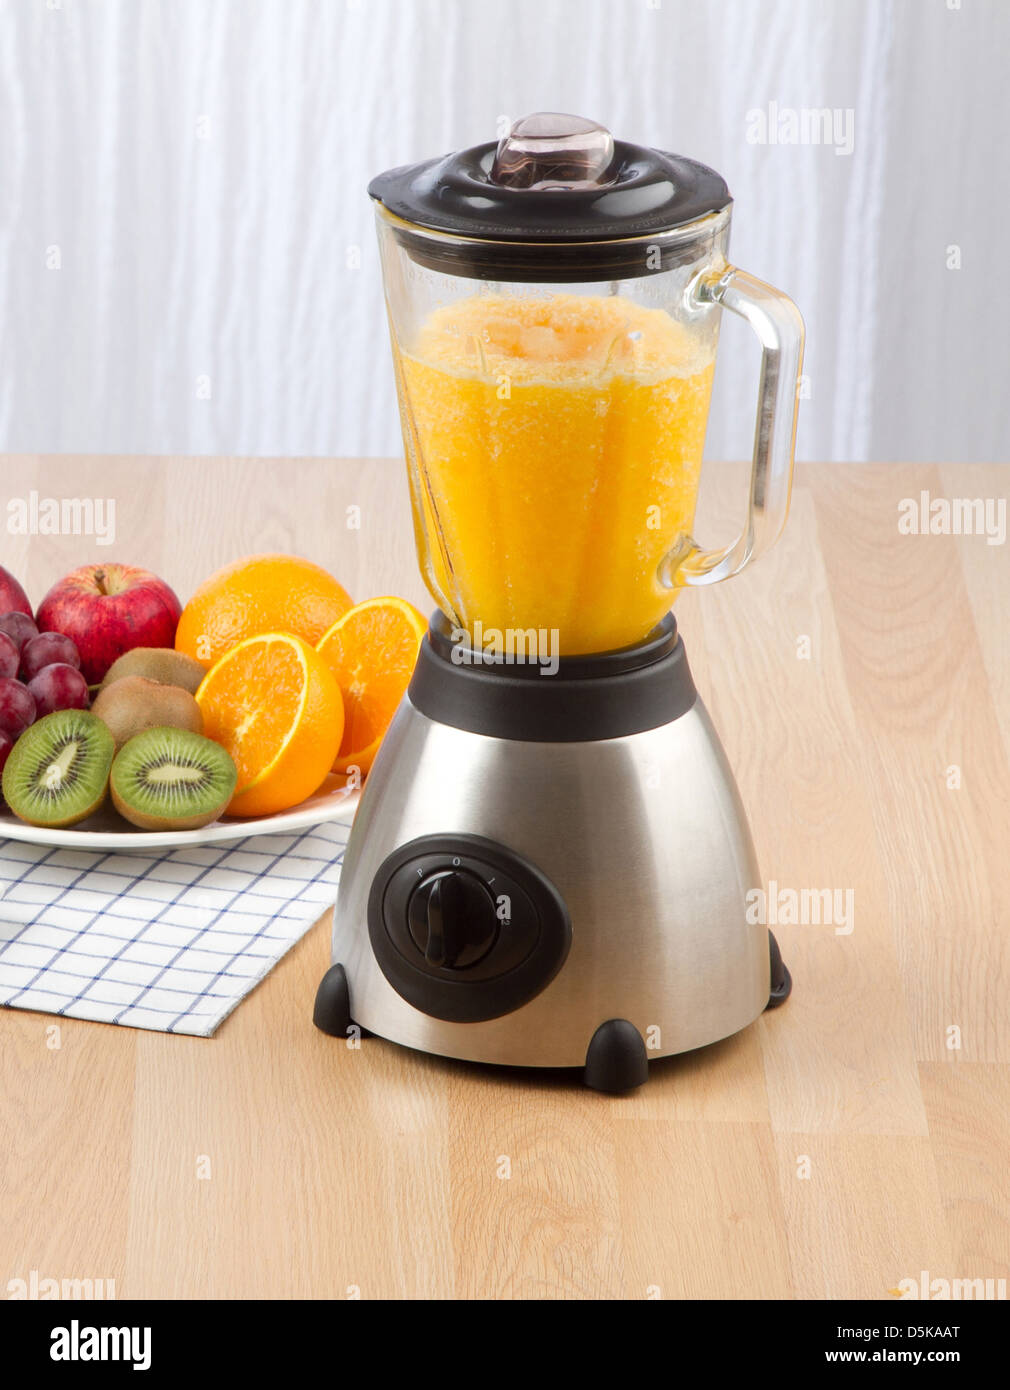 Mixer électrique pour faire du jus de fruits Photo Stock - Alamy